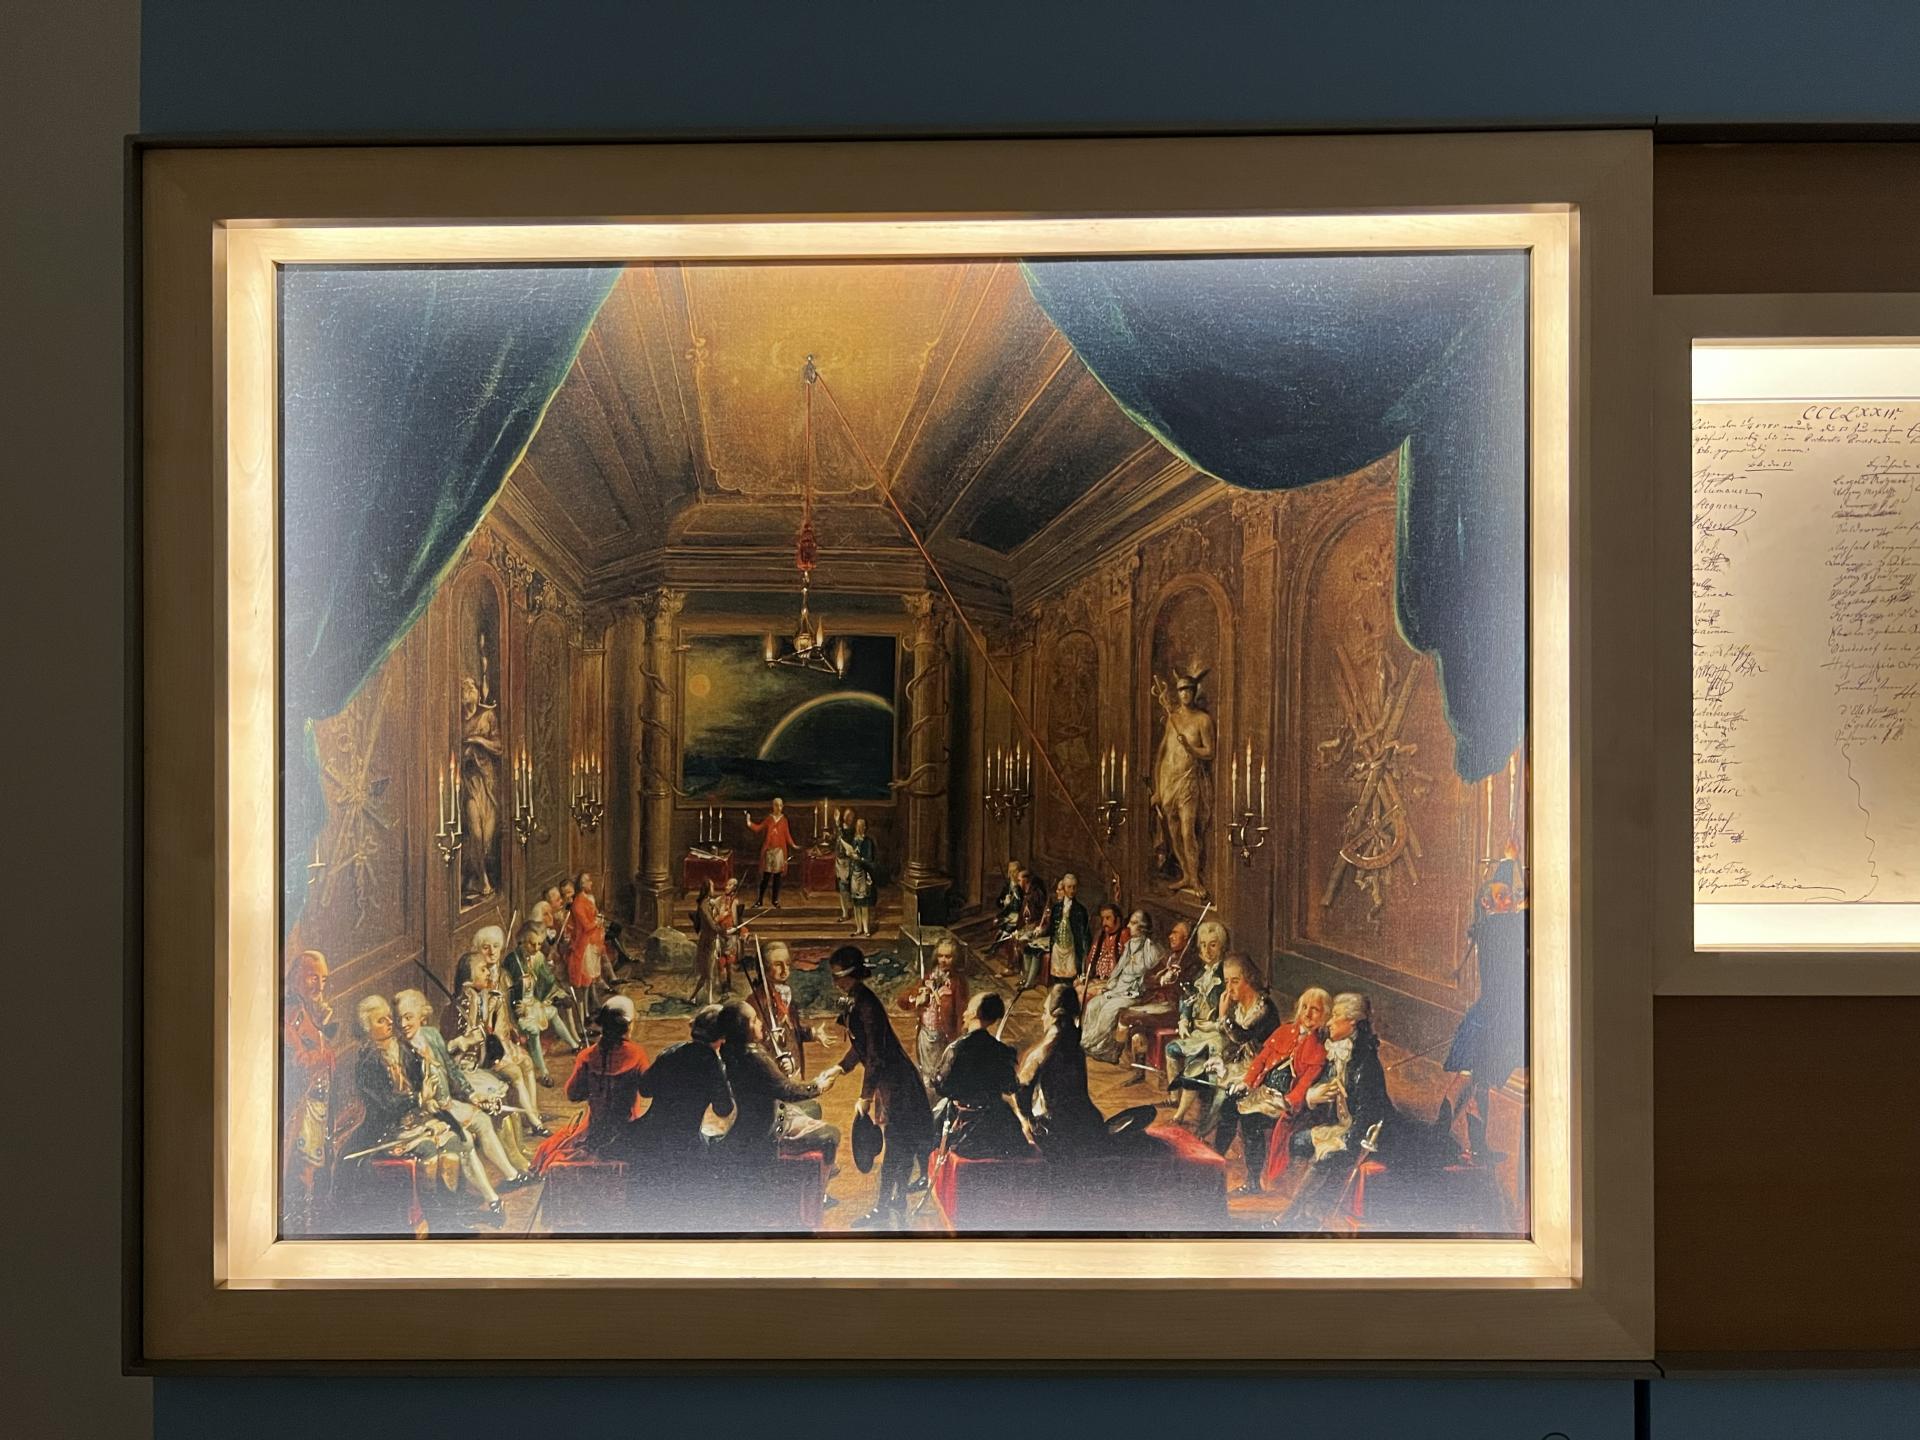 ©オーストリア政府観光局/ TYO
フリーメイソンの会合を描いた絵画。画面右端にモーツァルトの姿が見えます